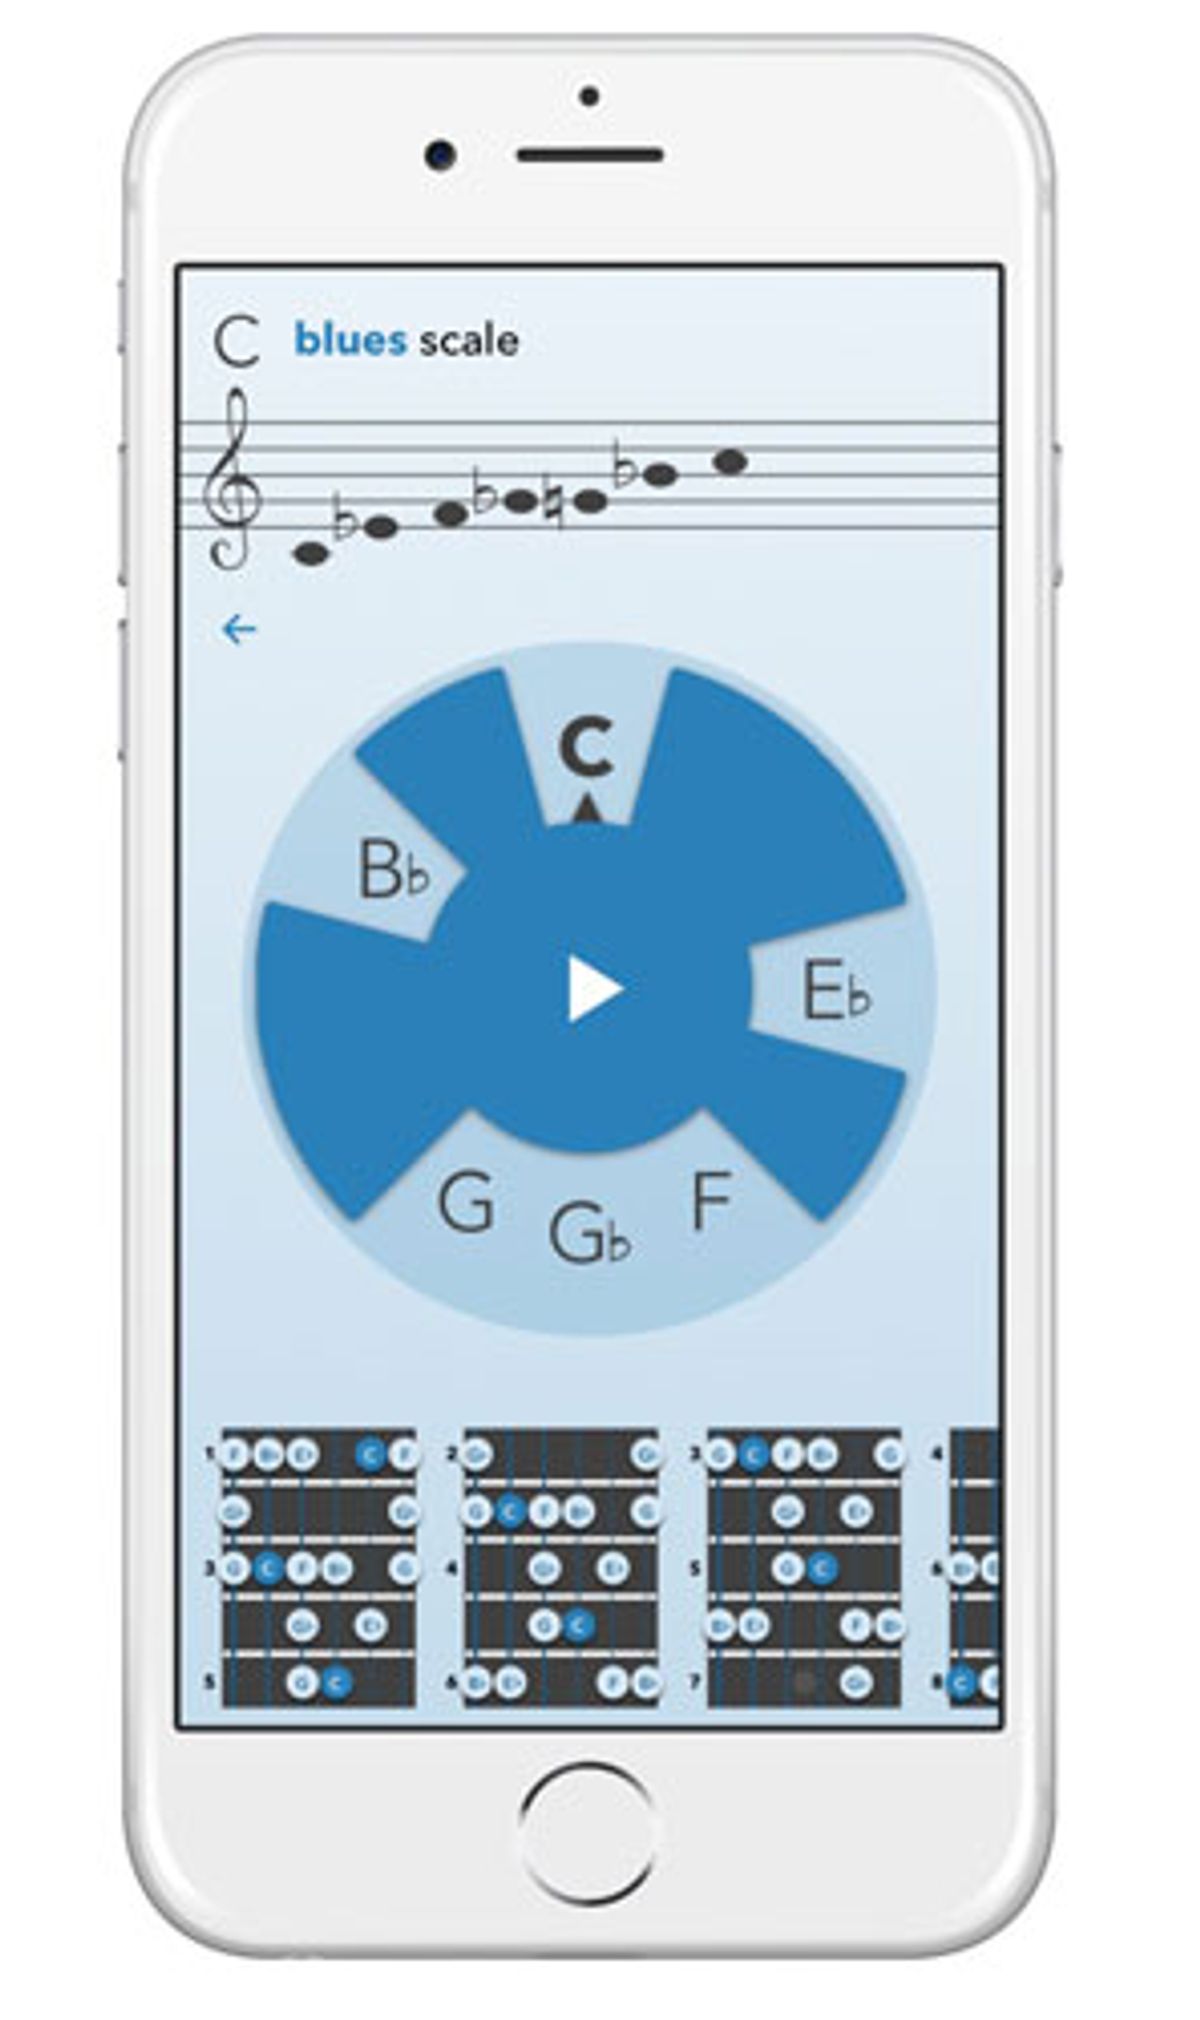 perTunes Announces the MusiClock App for iOS